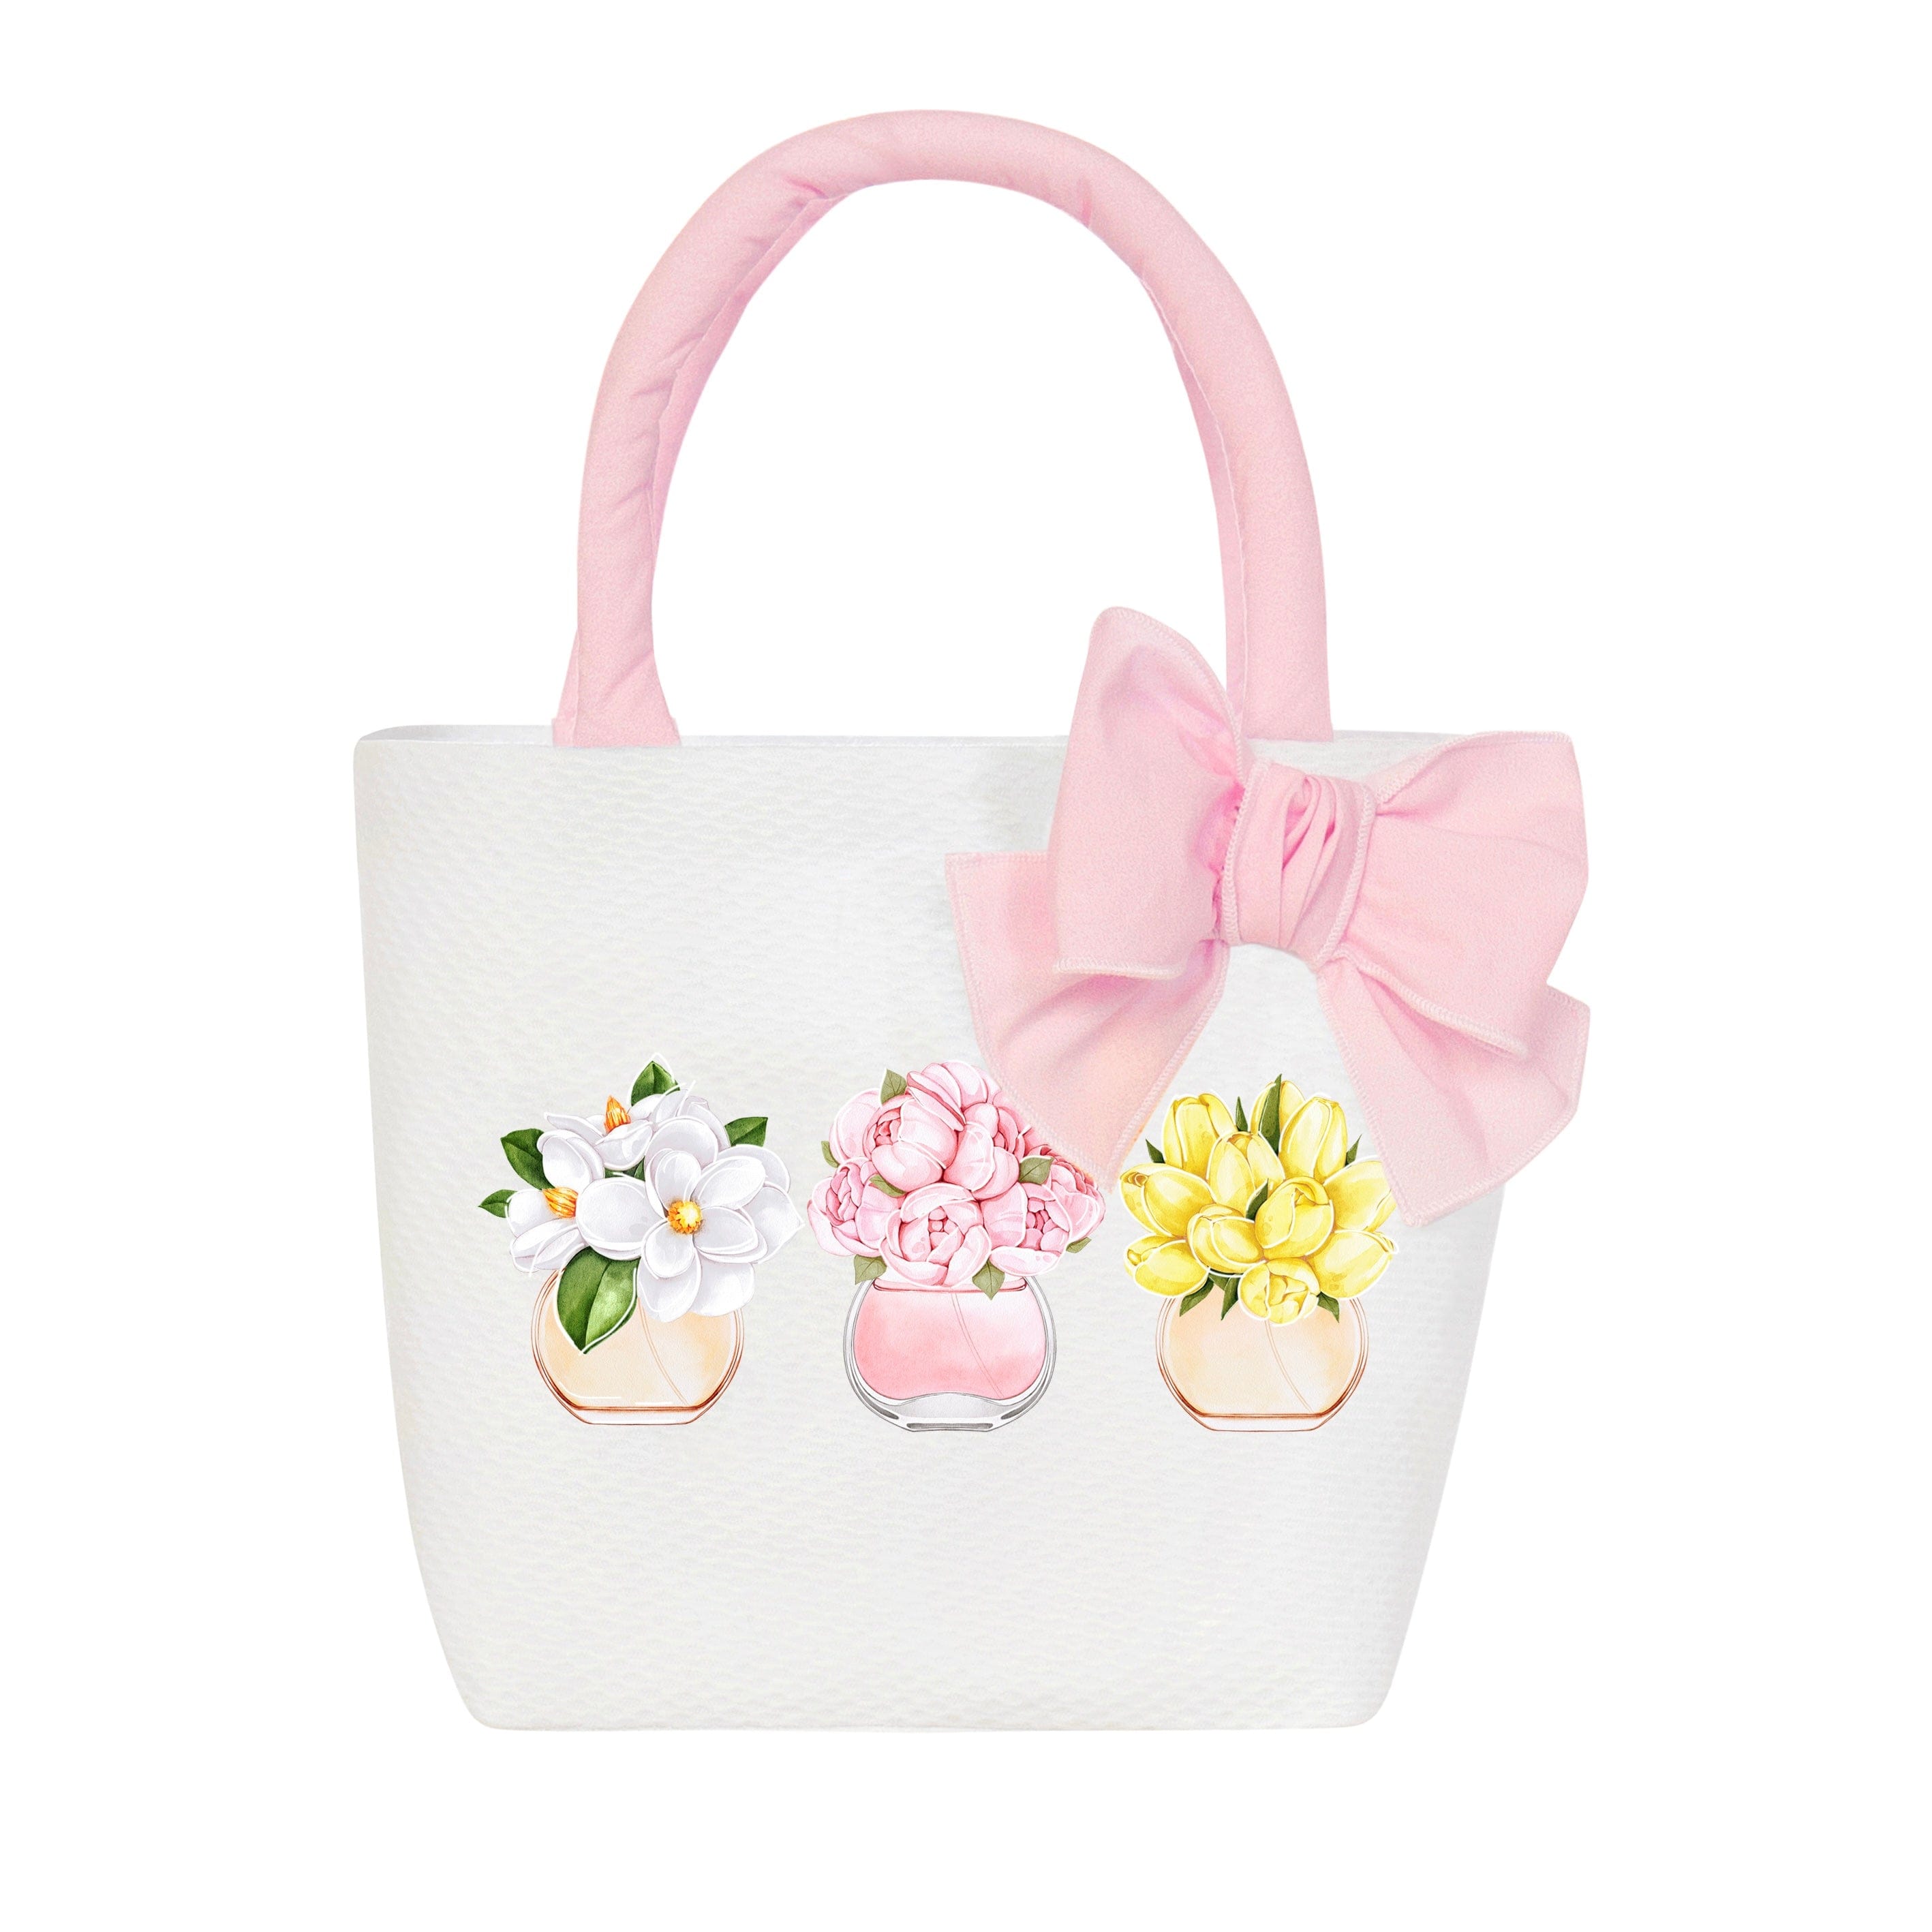 BALLOON CHIC - Flower Vase Bag - White